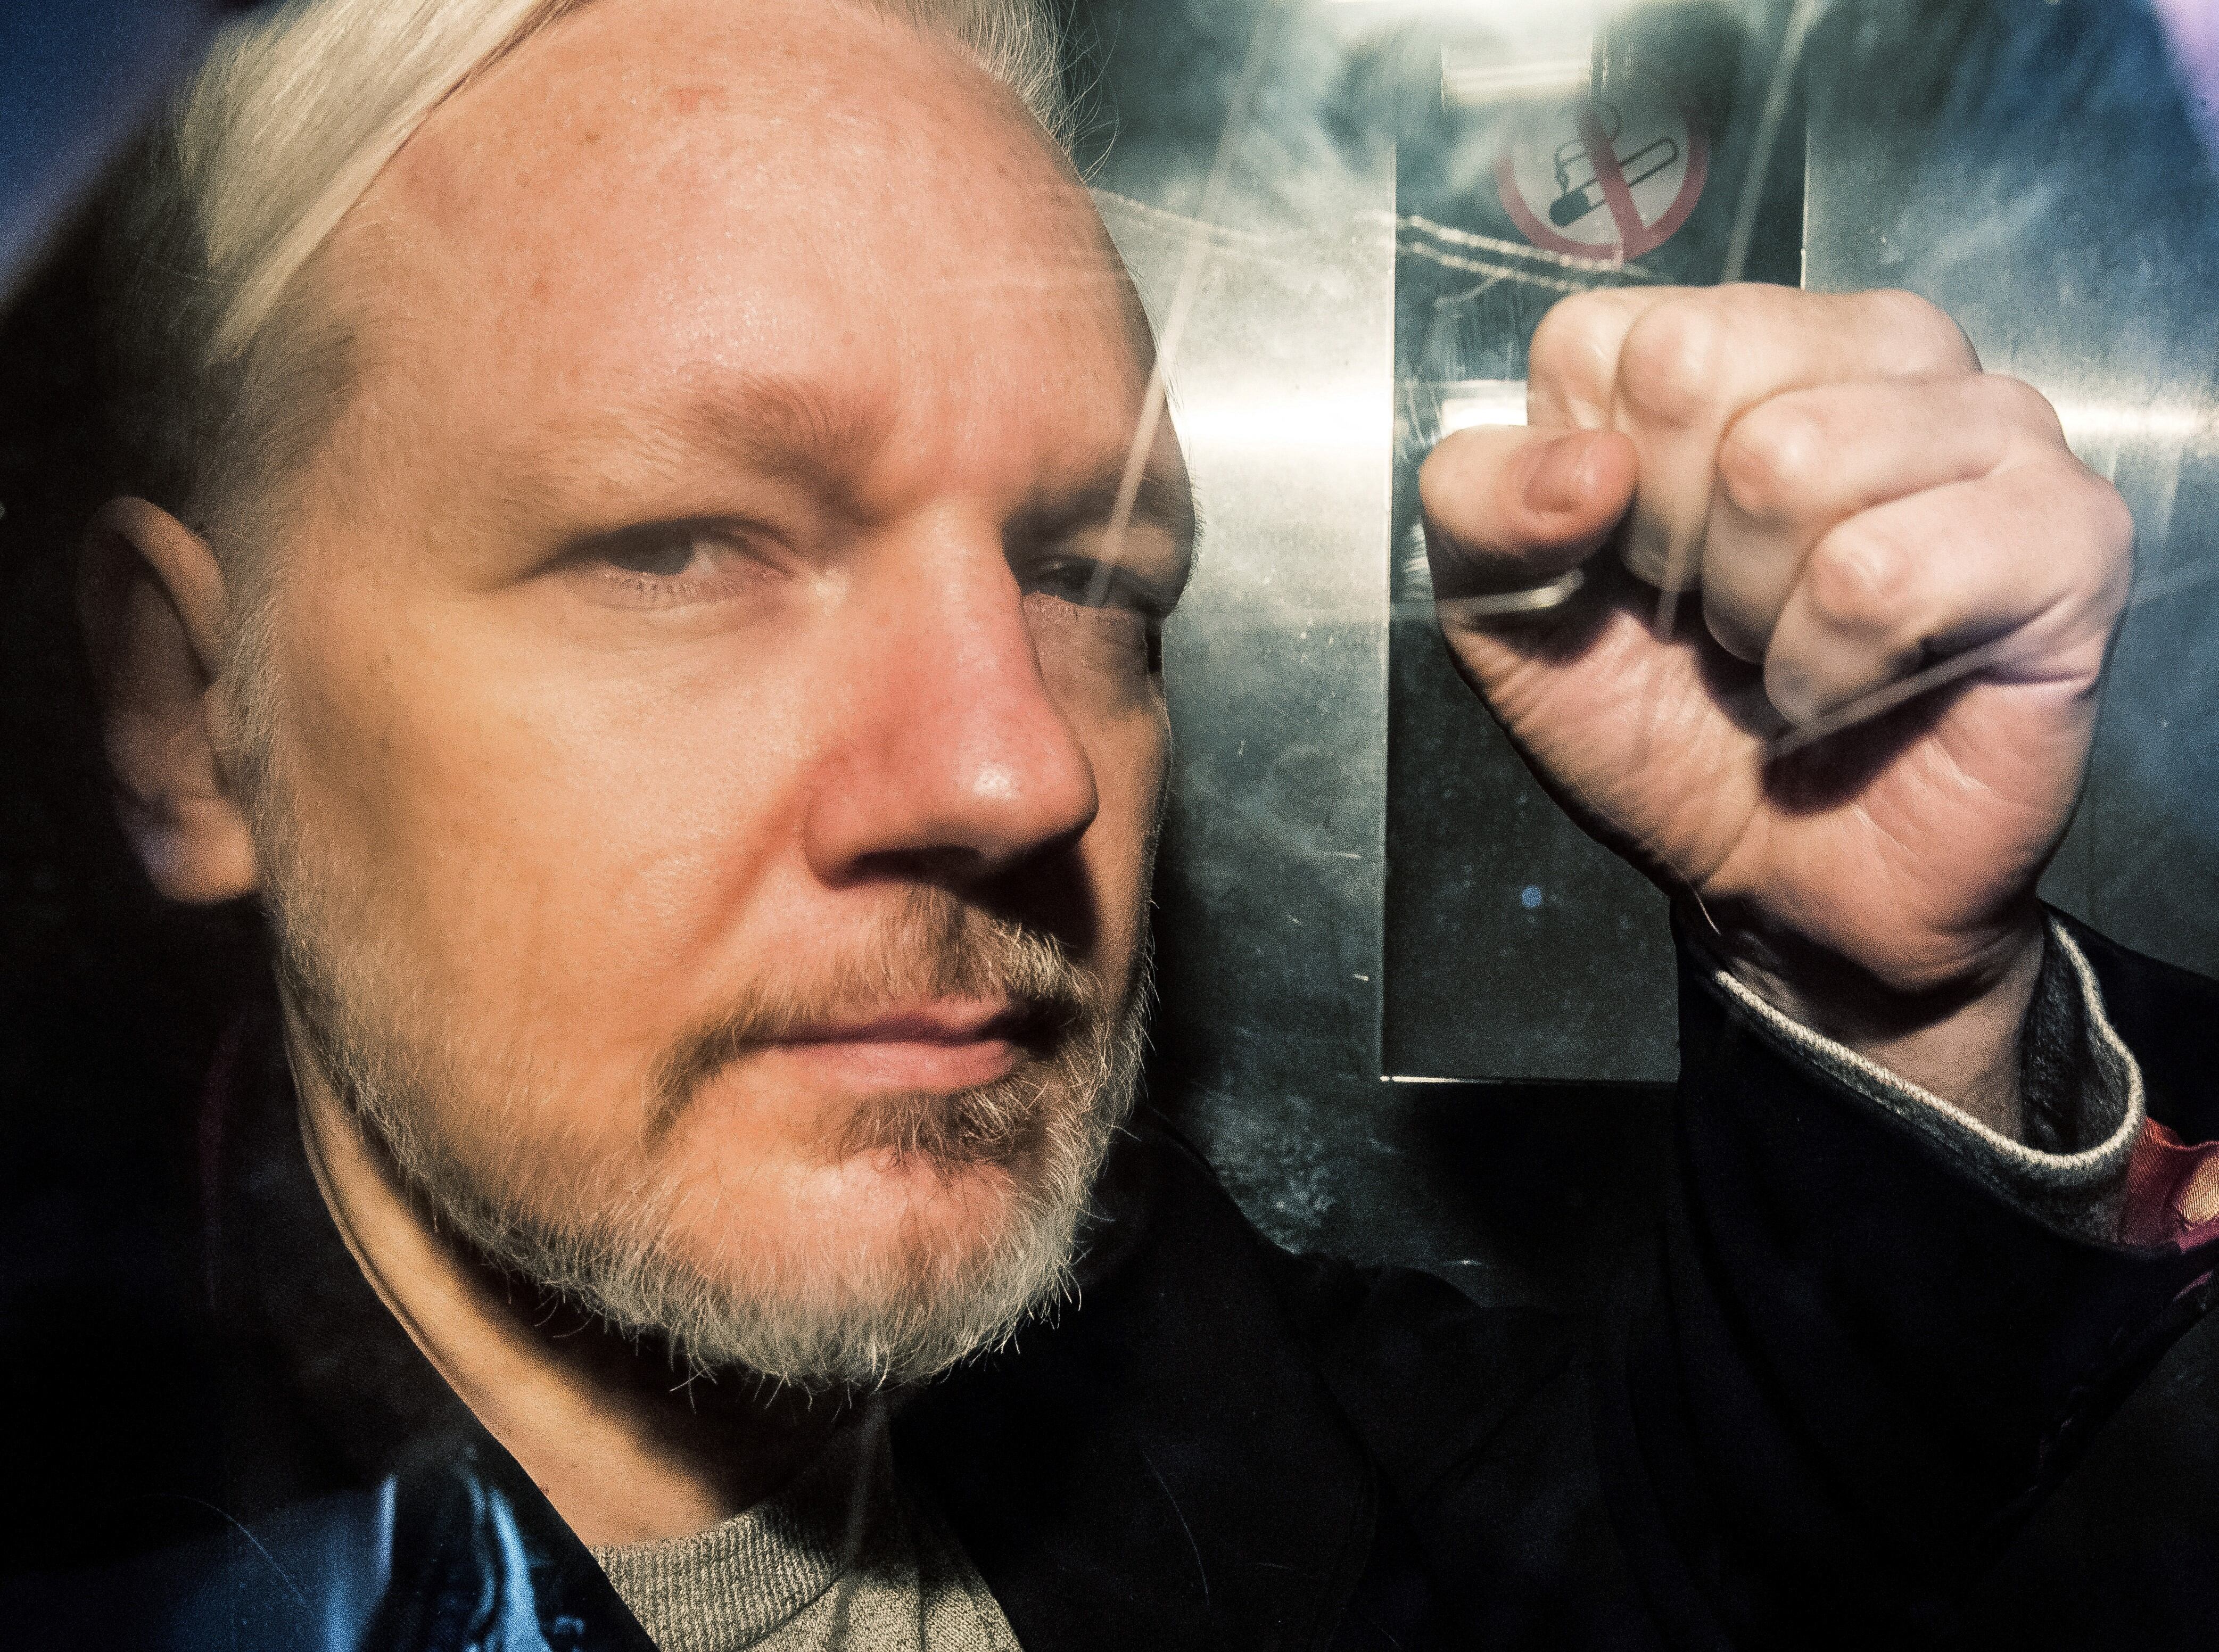 El fundador de WikiLeaks, Julian Assange, hace gestos desde la ventana de una camioneta de prisión mientras lo conducen al Tribunal de la Corona de Southwark, en Londres, el 1 de mayo de 2019. (Foto de Daniel LEAL / AFP).